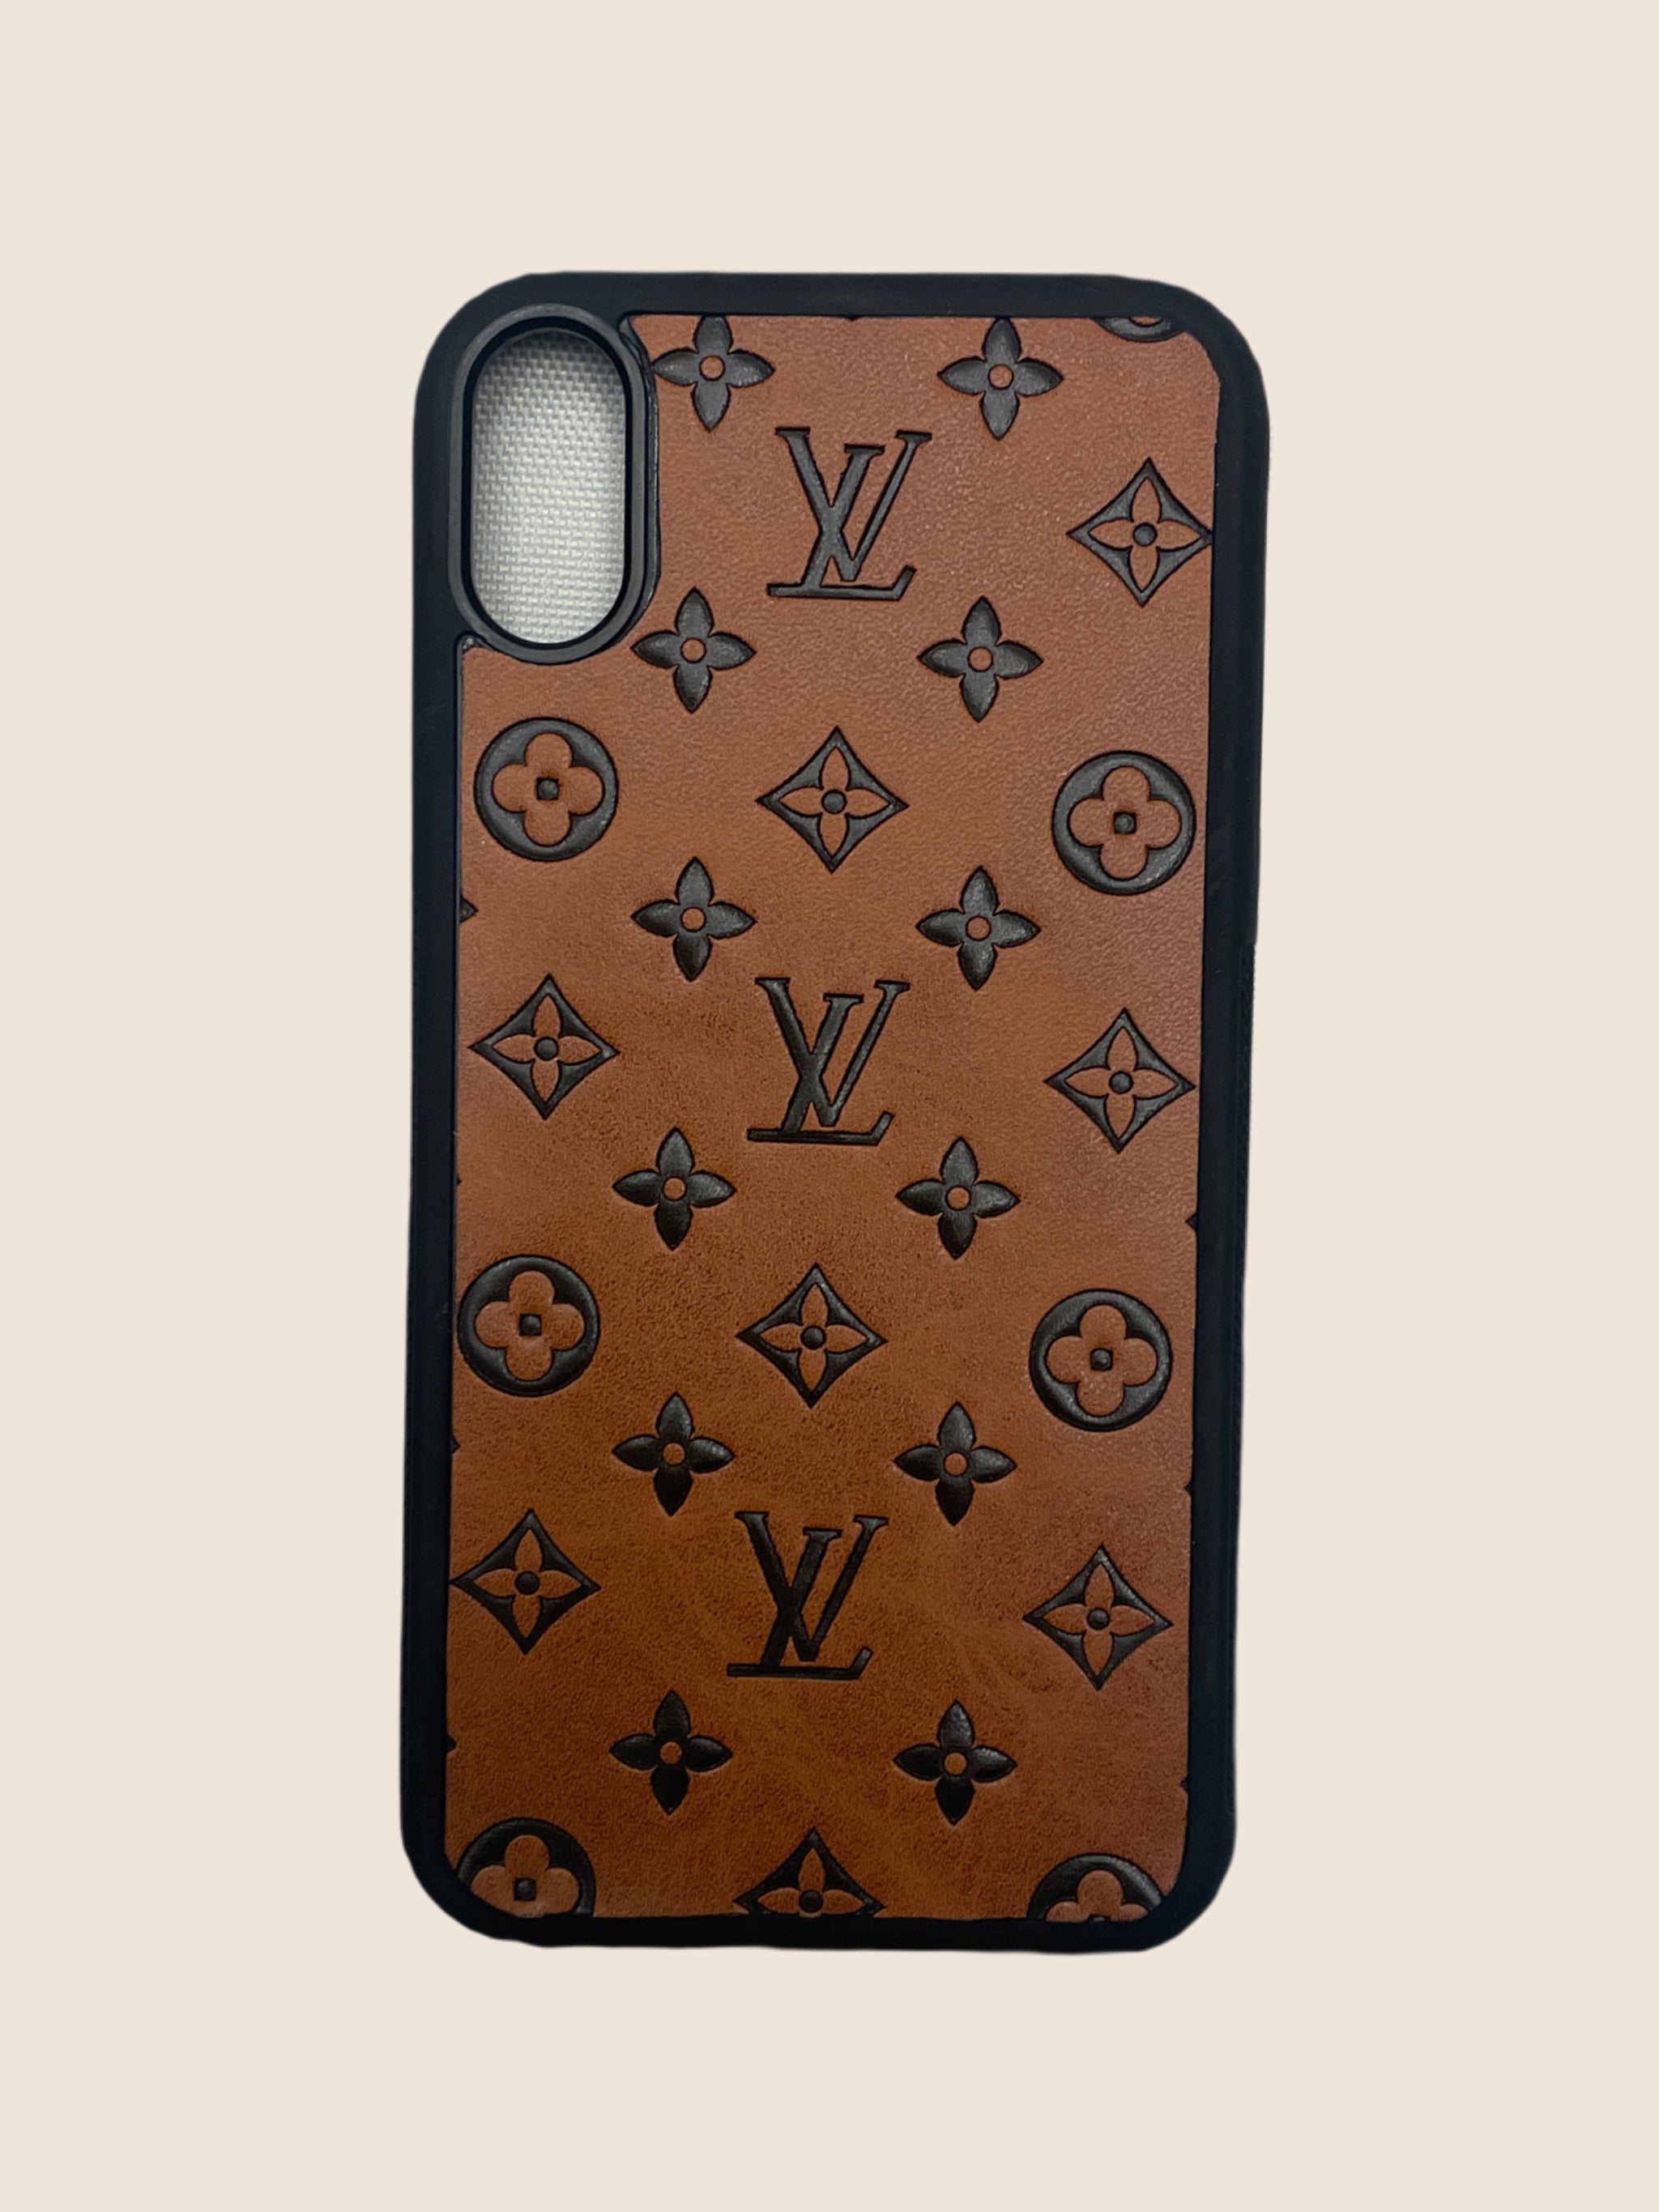 designer lv phone case